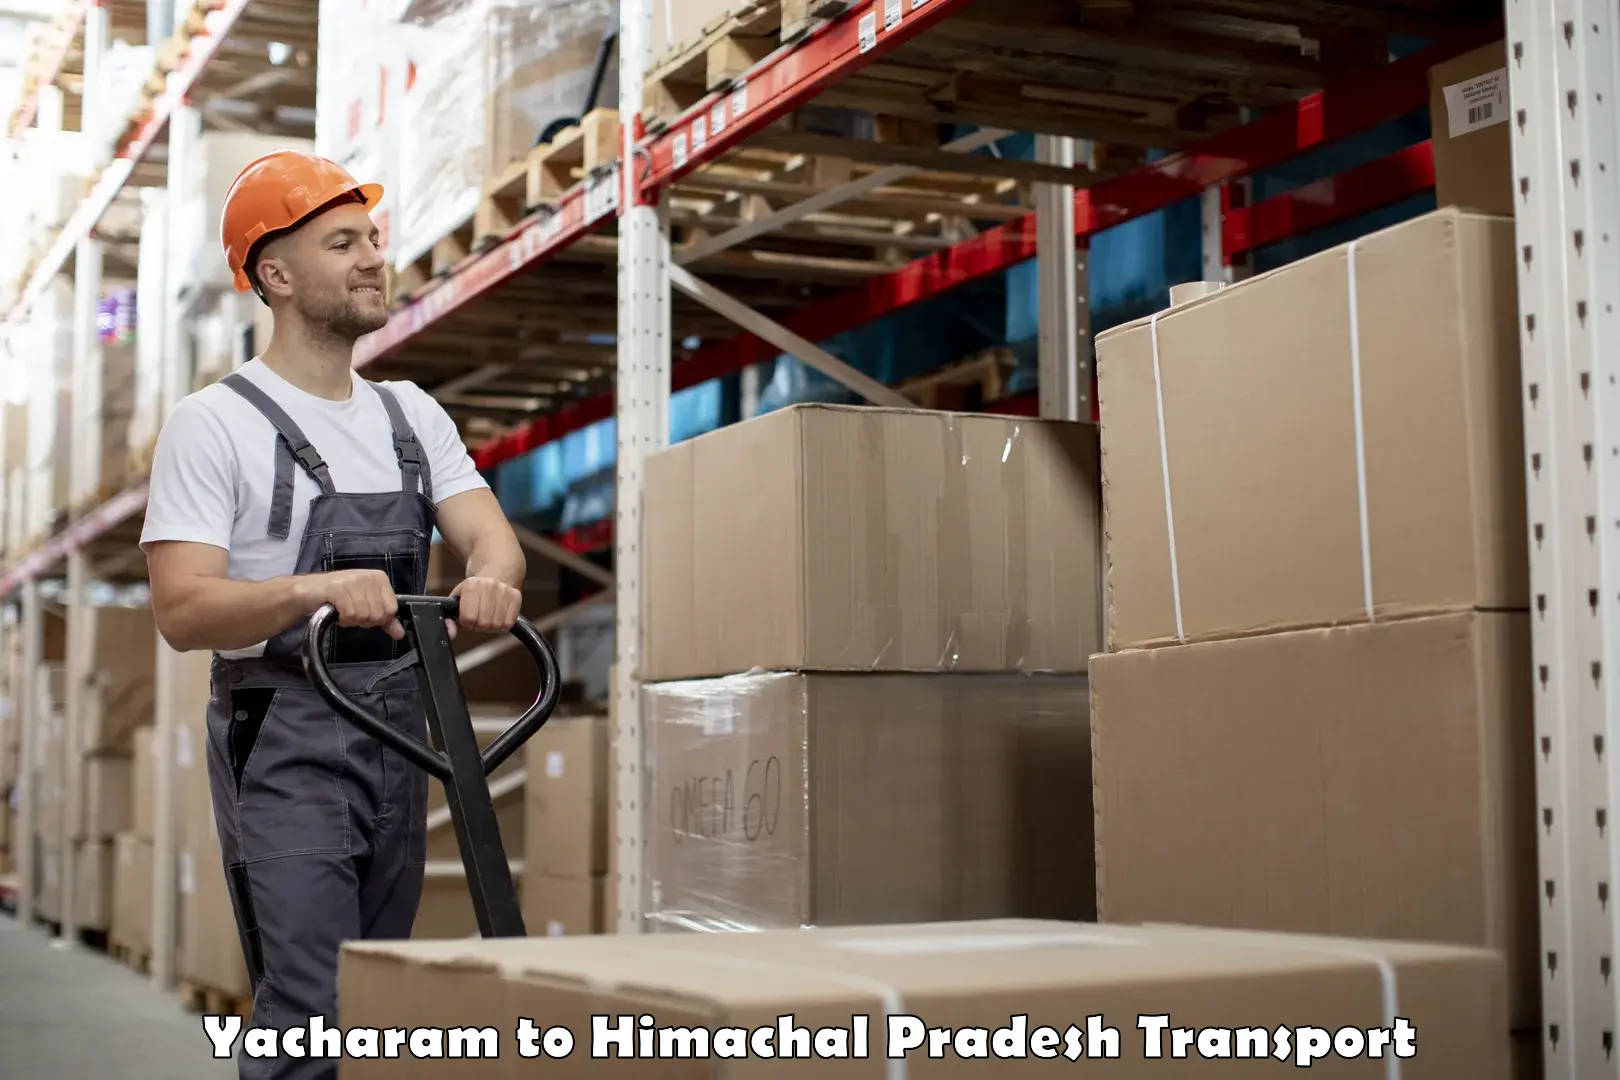 Truck transport companies in India Yacharam to Dalhousie